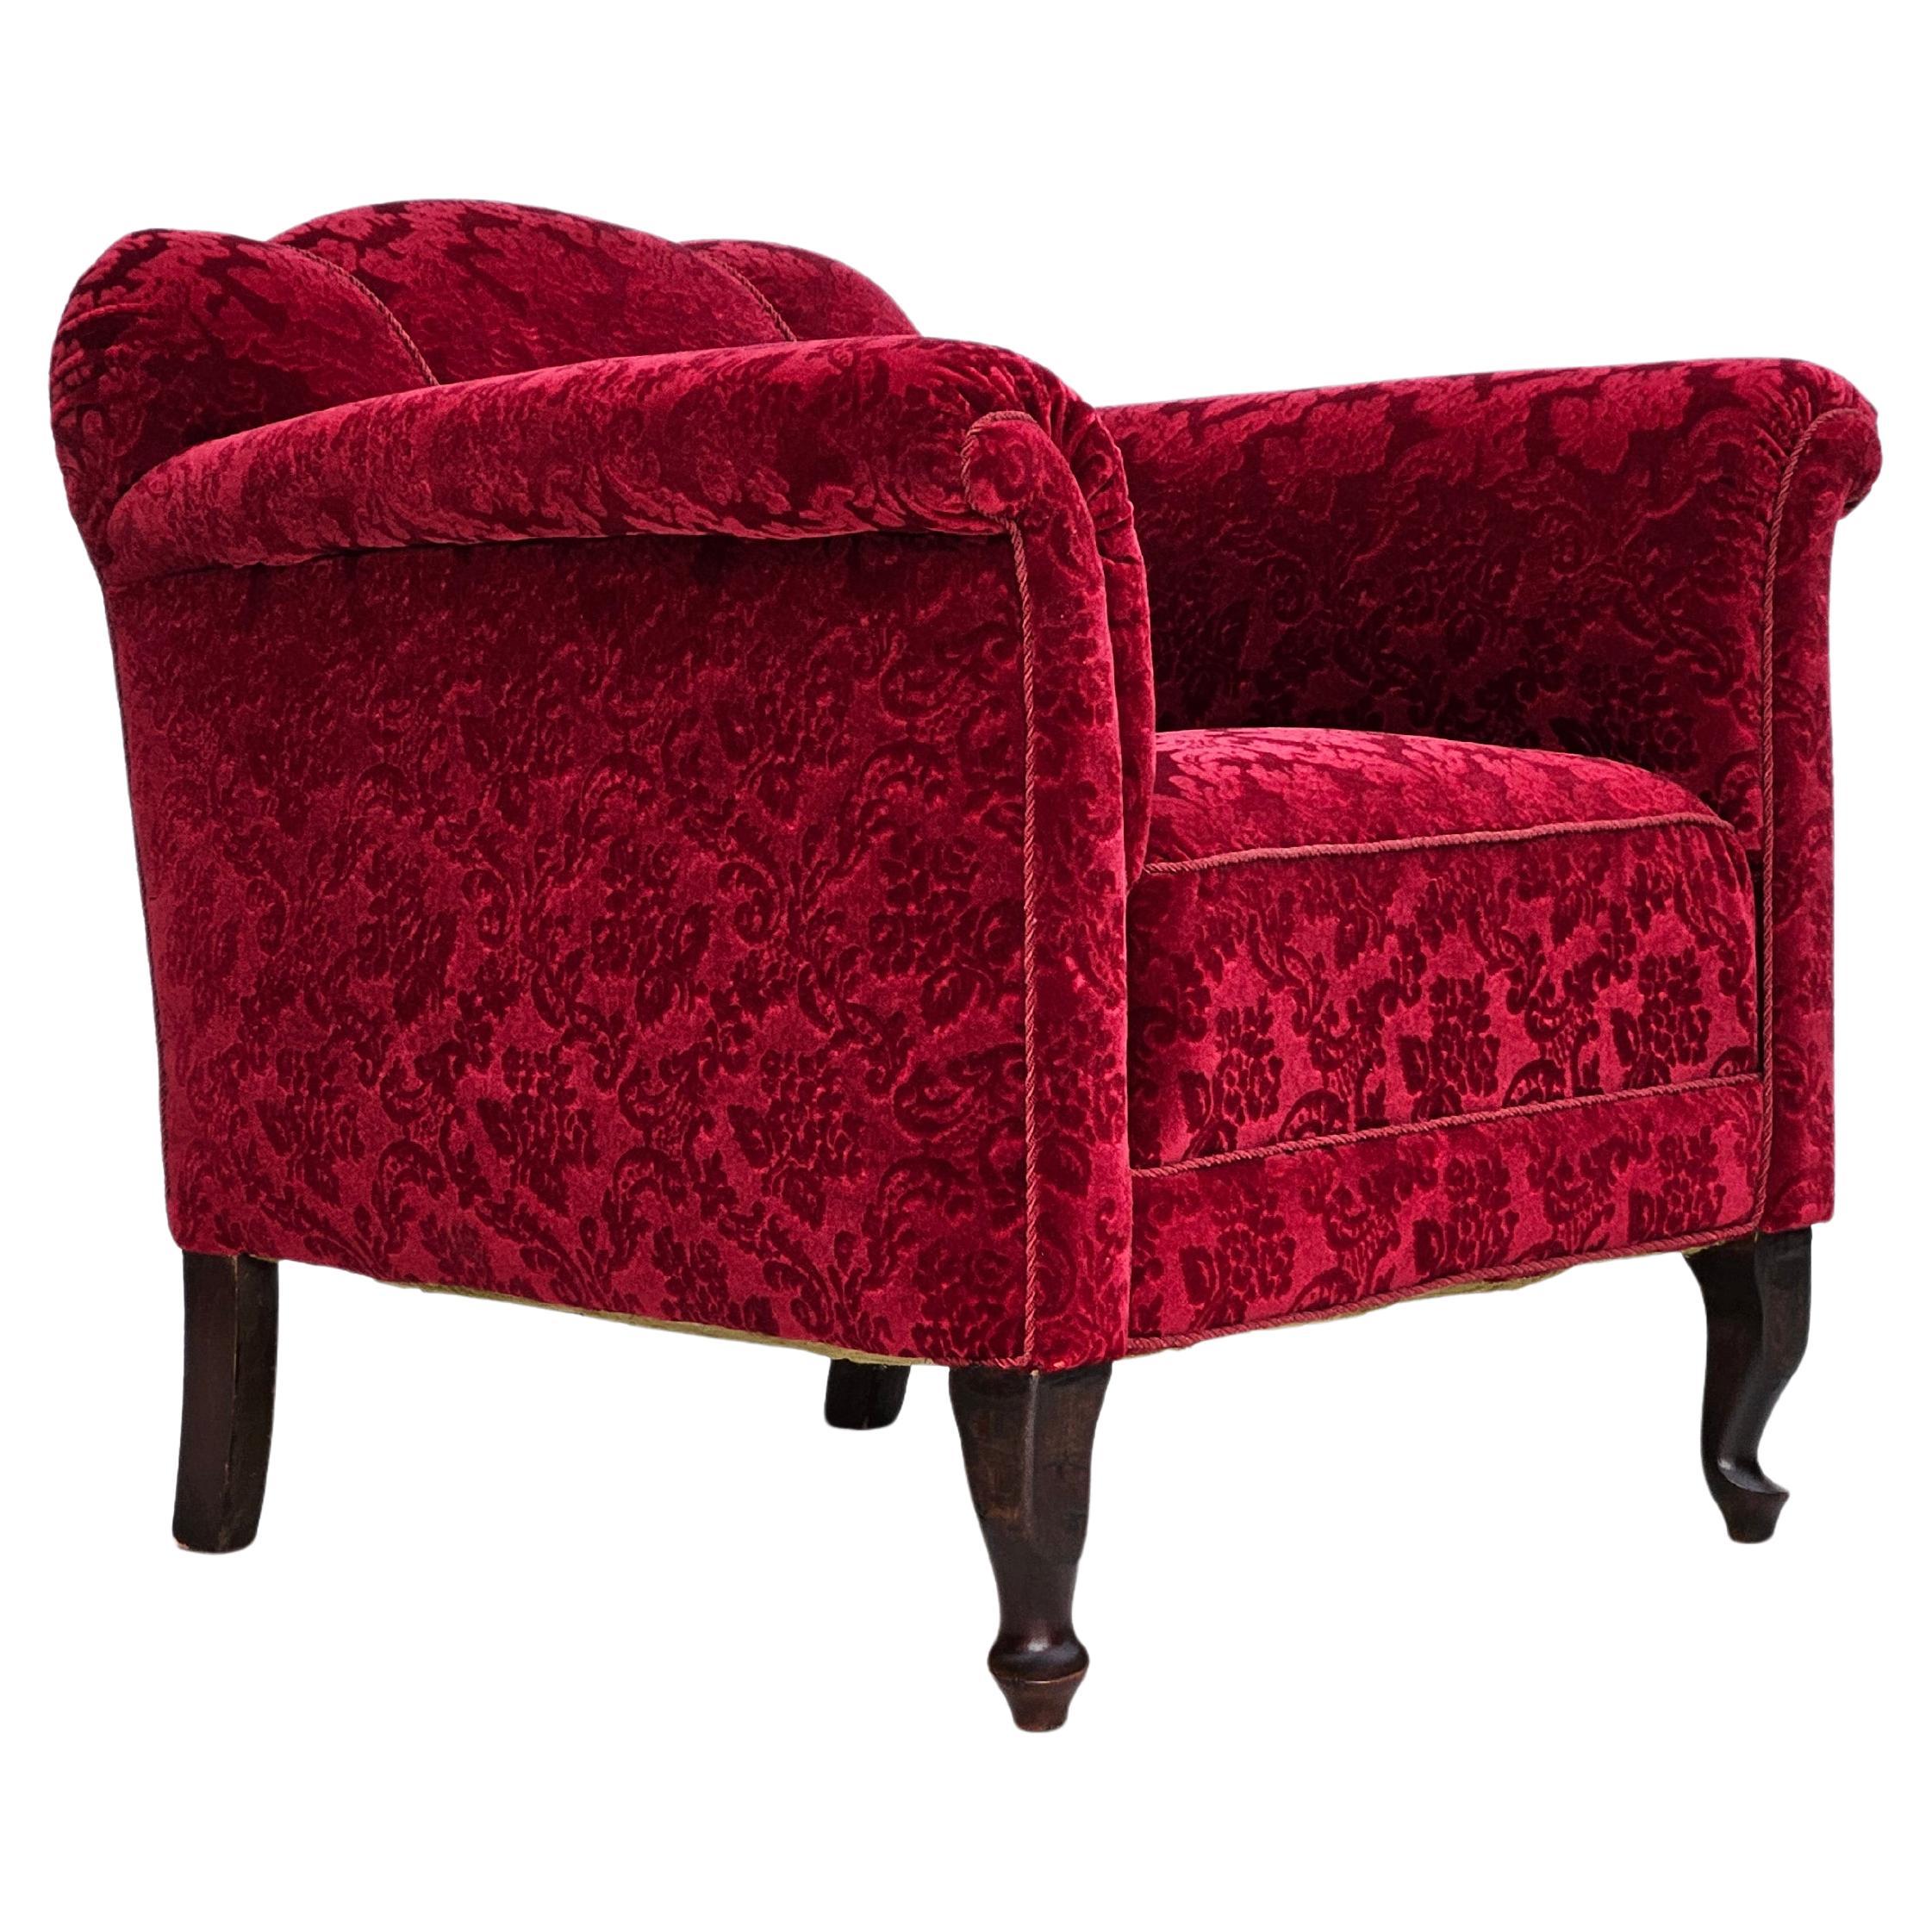 Chaise longue danoise des années 1950, tissu coton/laine rouge, bois de hêtre.